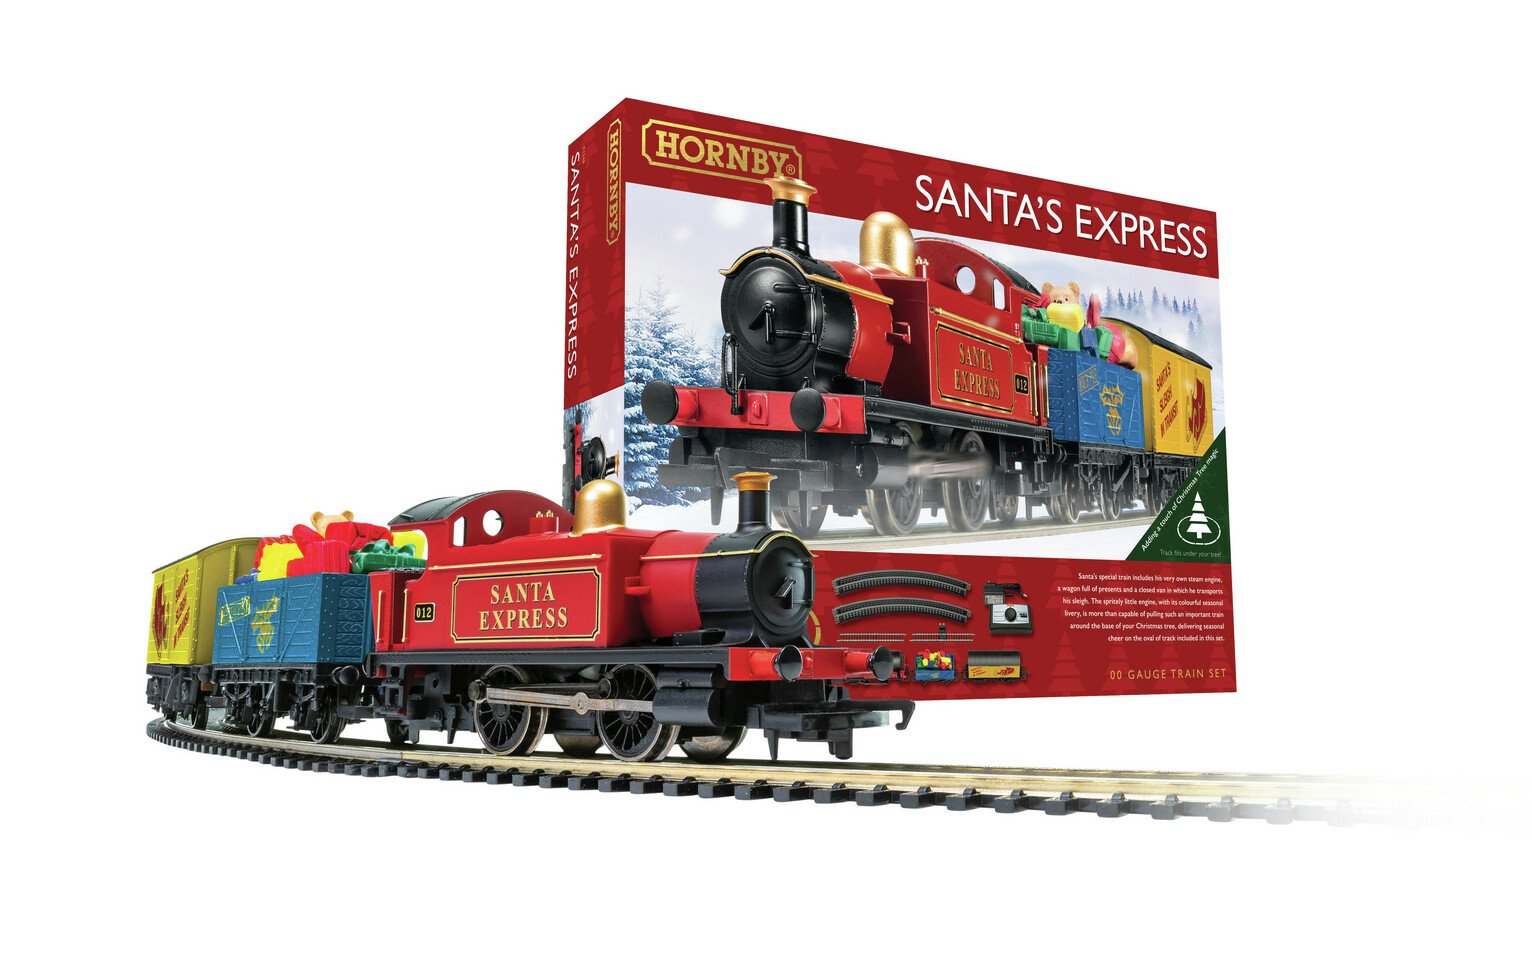 Hornby Hobbie Santa's Express Christmas Train Set Review